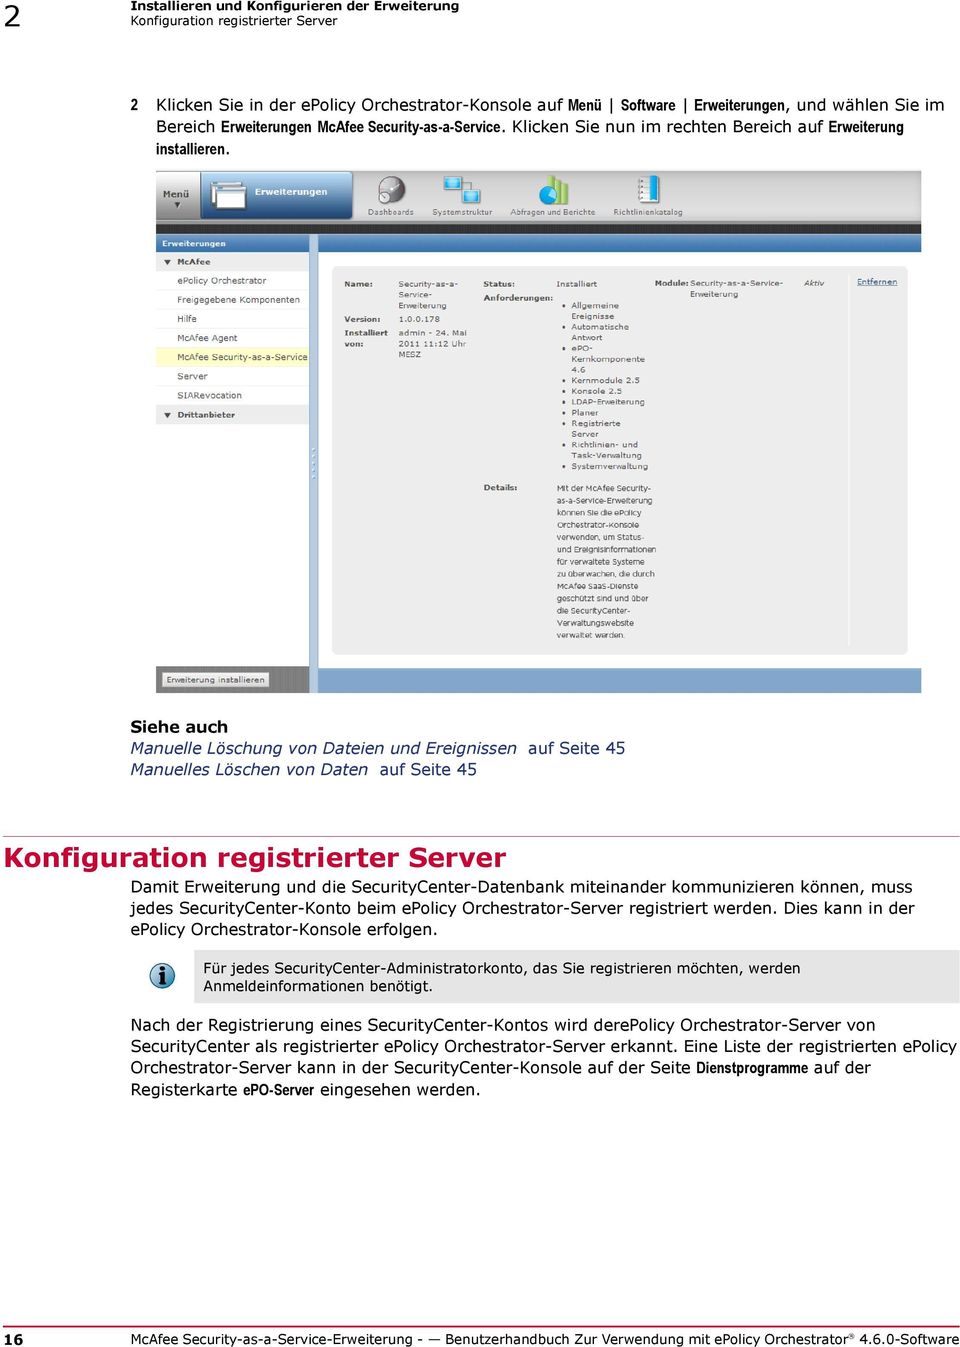 Siehe auch Manuelle Löschung von Dateien und Ereignissen auf Seite 45 Manuelles Löschen von Daten auf Seite 45 Konfiguration registrierter Server Damit Erweiterung und die SecurityCenter-Datenbank